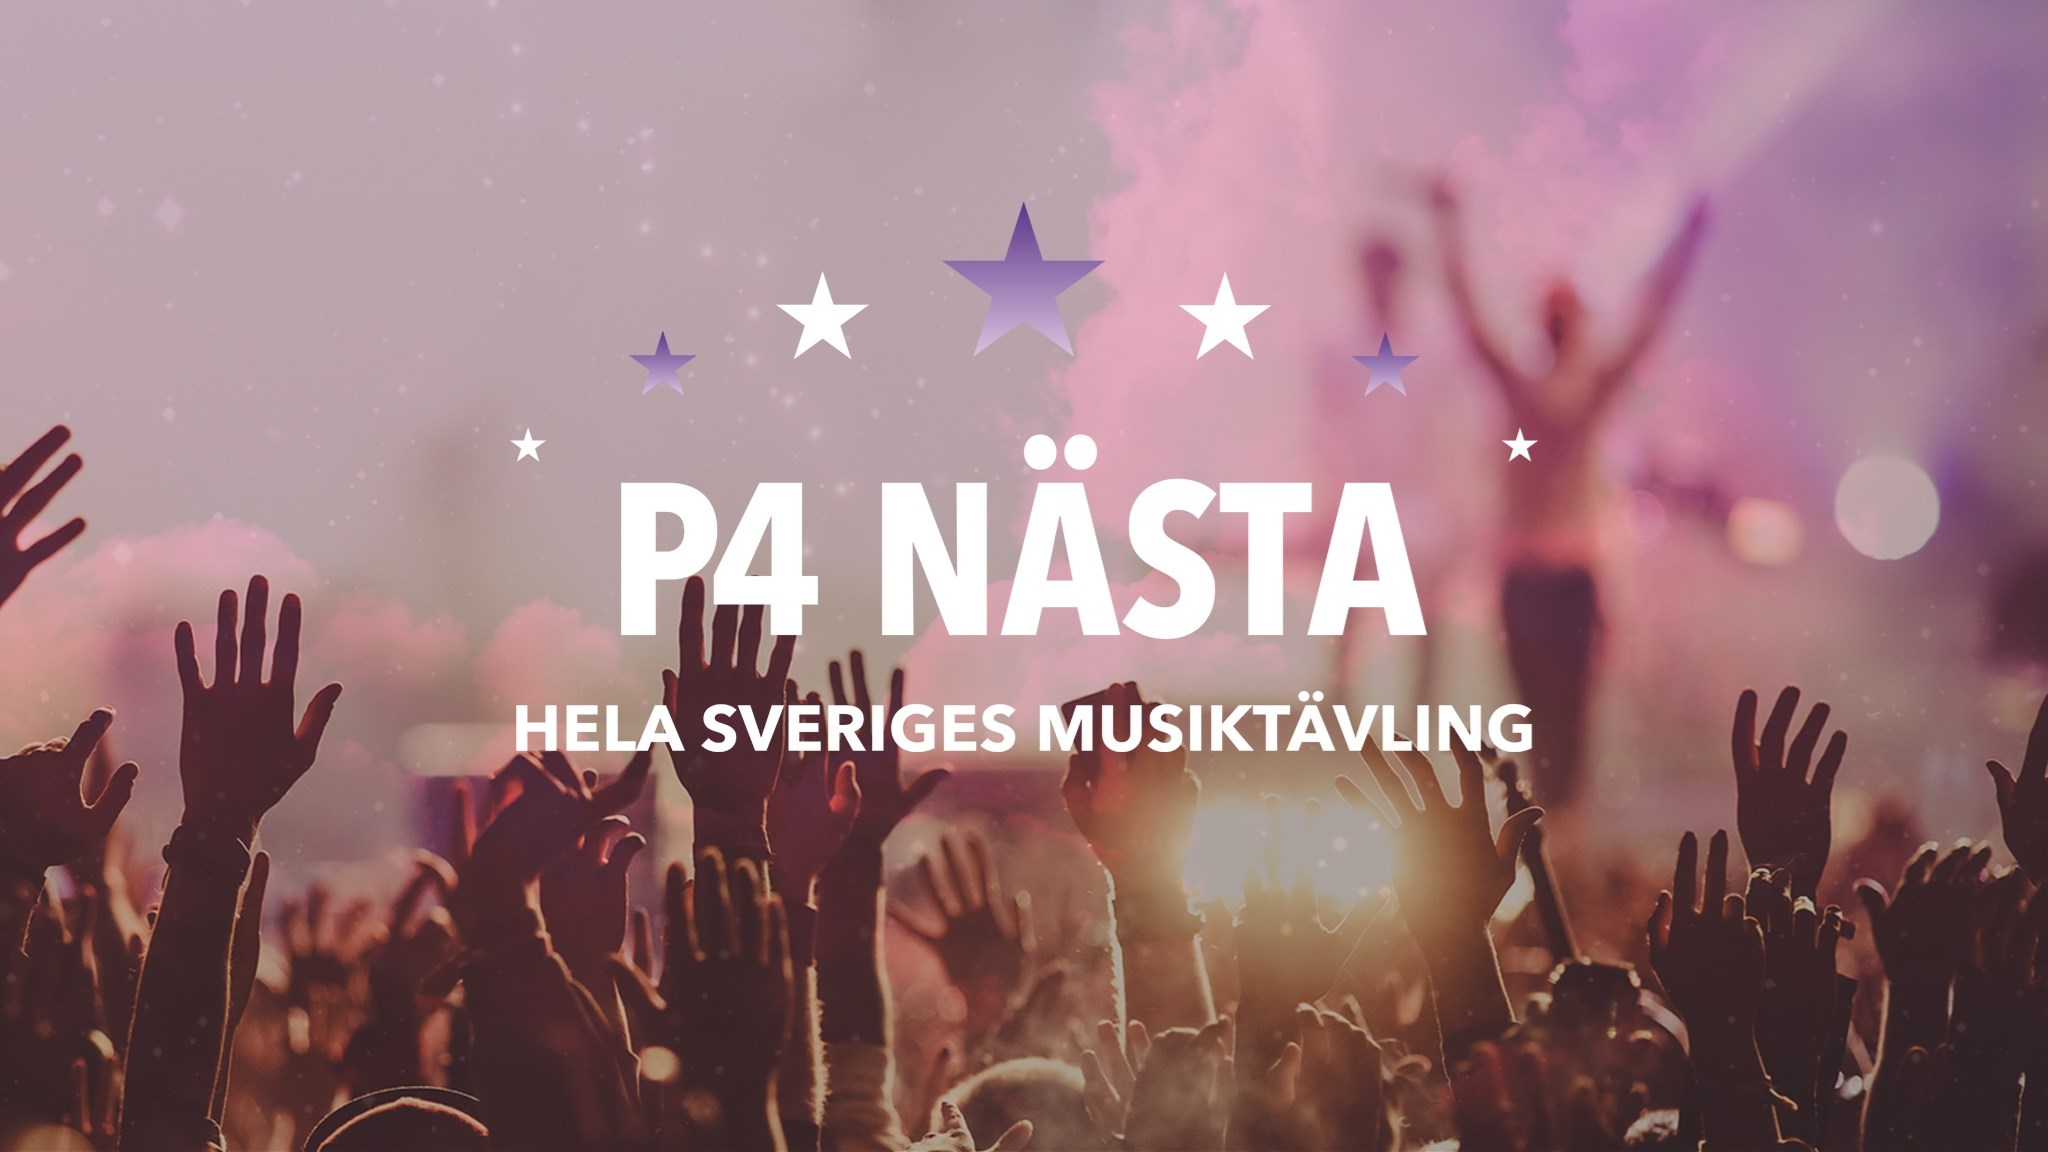 Melodifestivalen 2020 : annonce des 8 finalistes du P4 Nästa